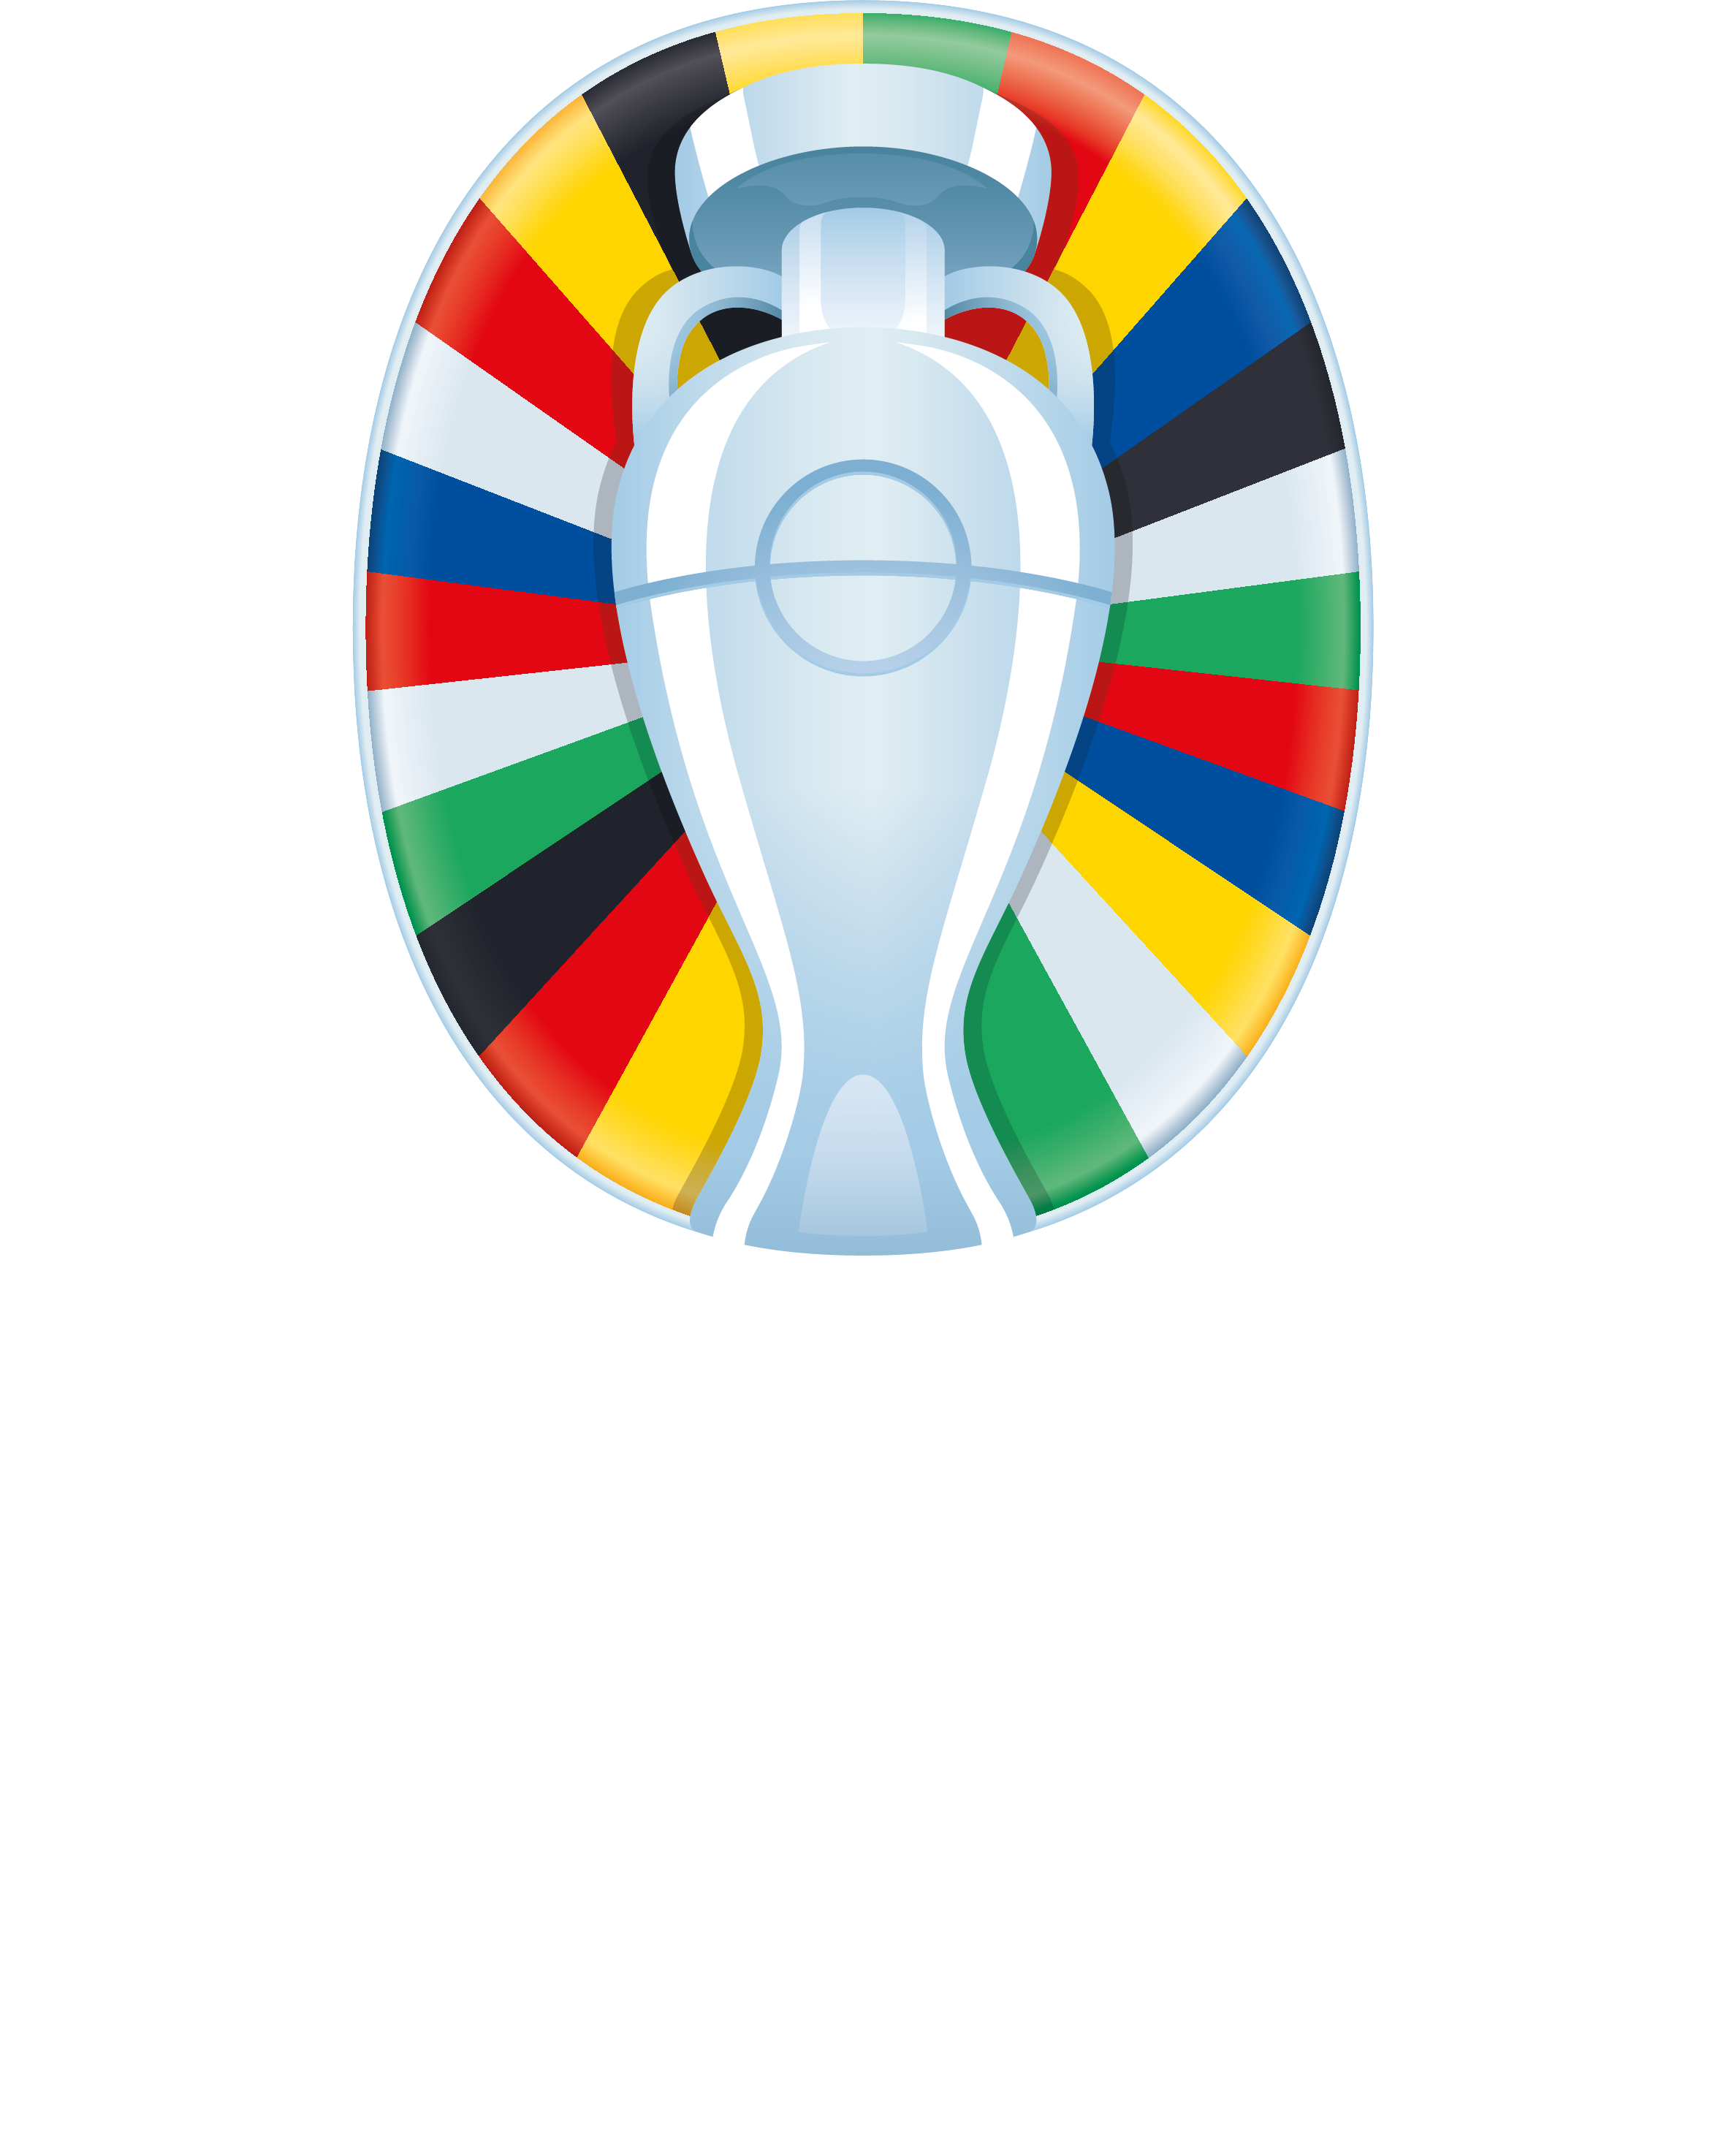 EURO 2024 Logo